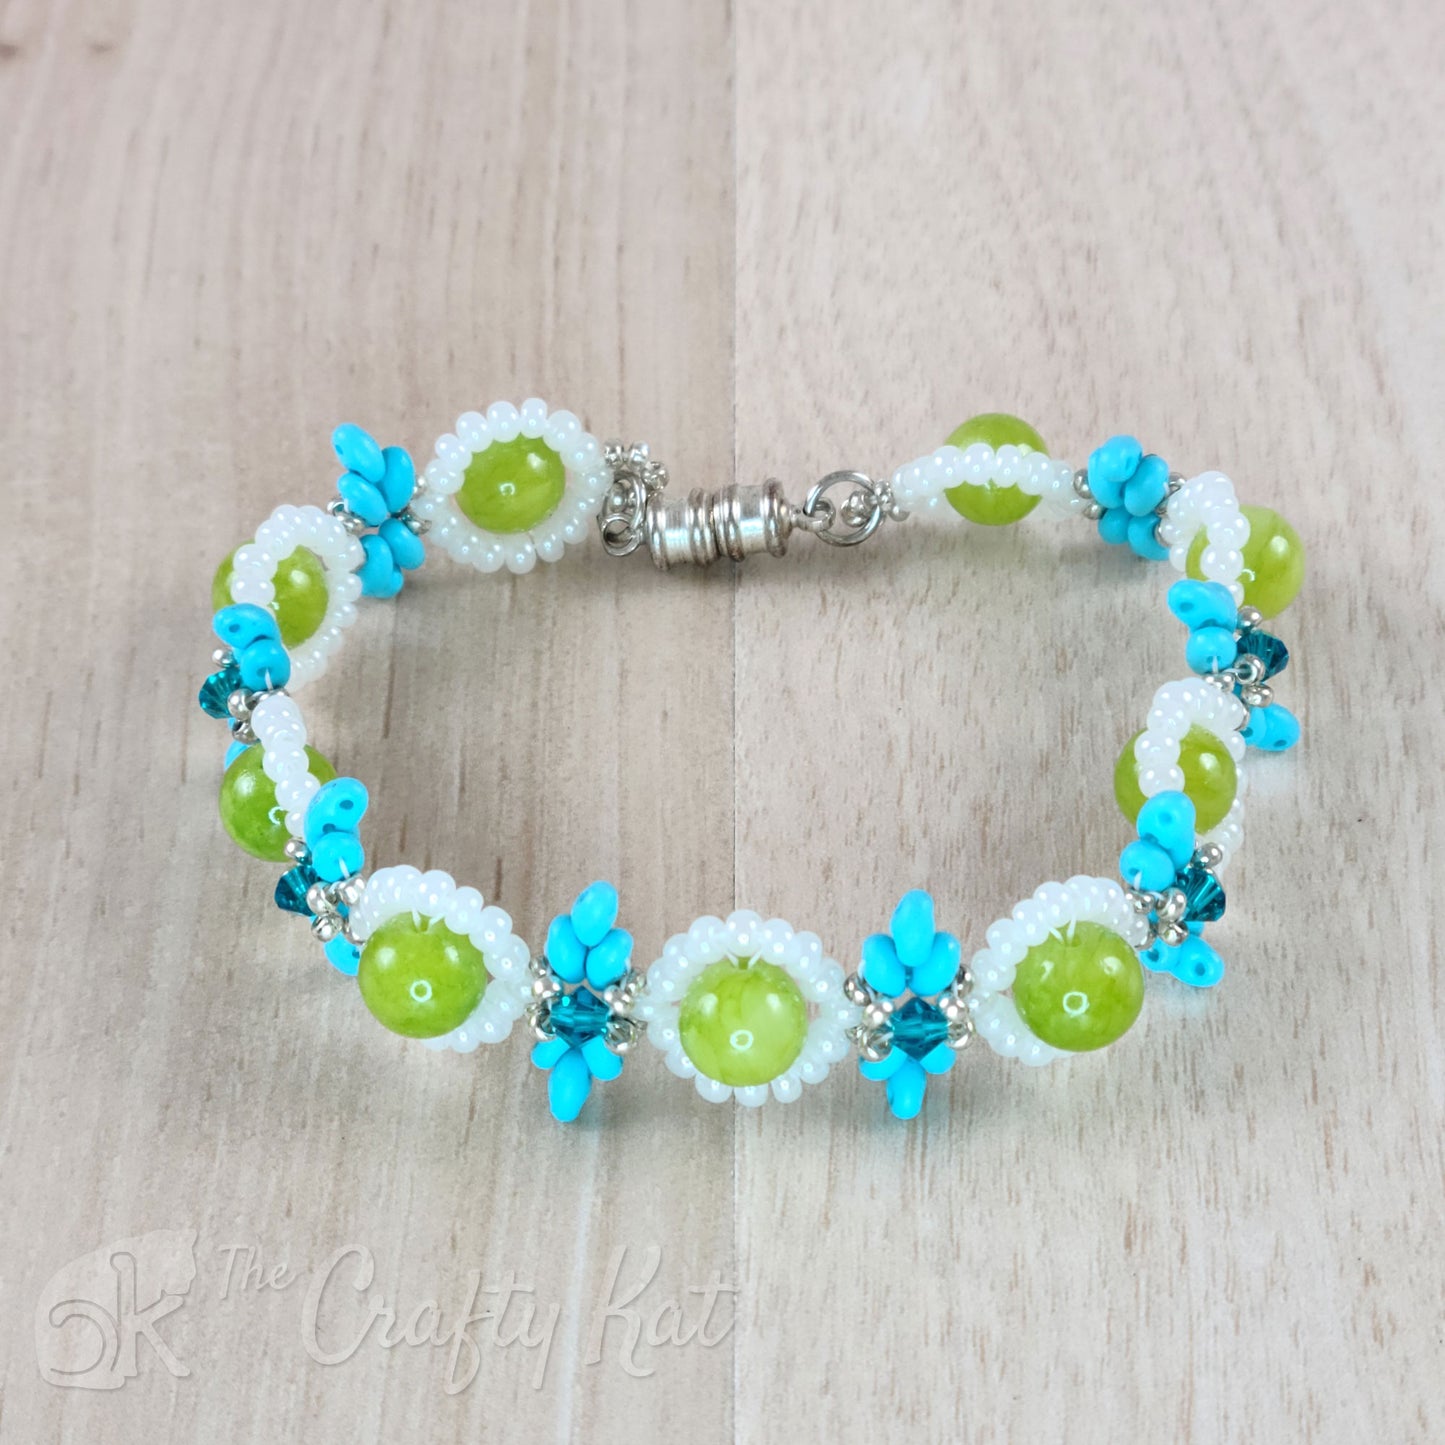 How to Make Flower Bead Bracelet (Daisy Chain Bracelet)